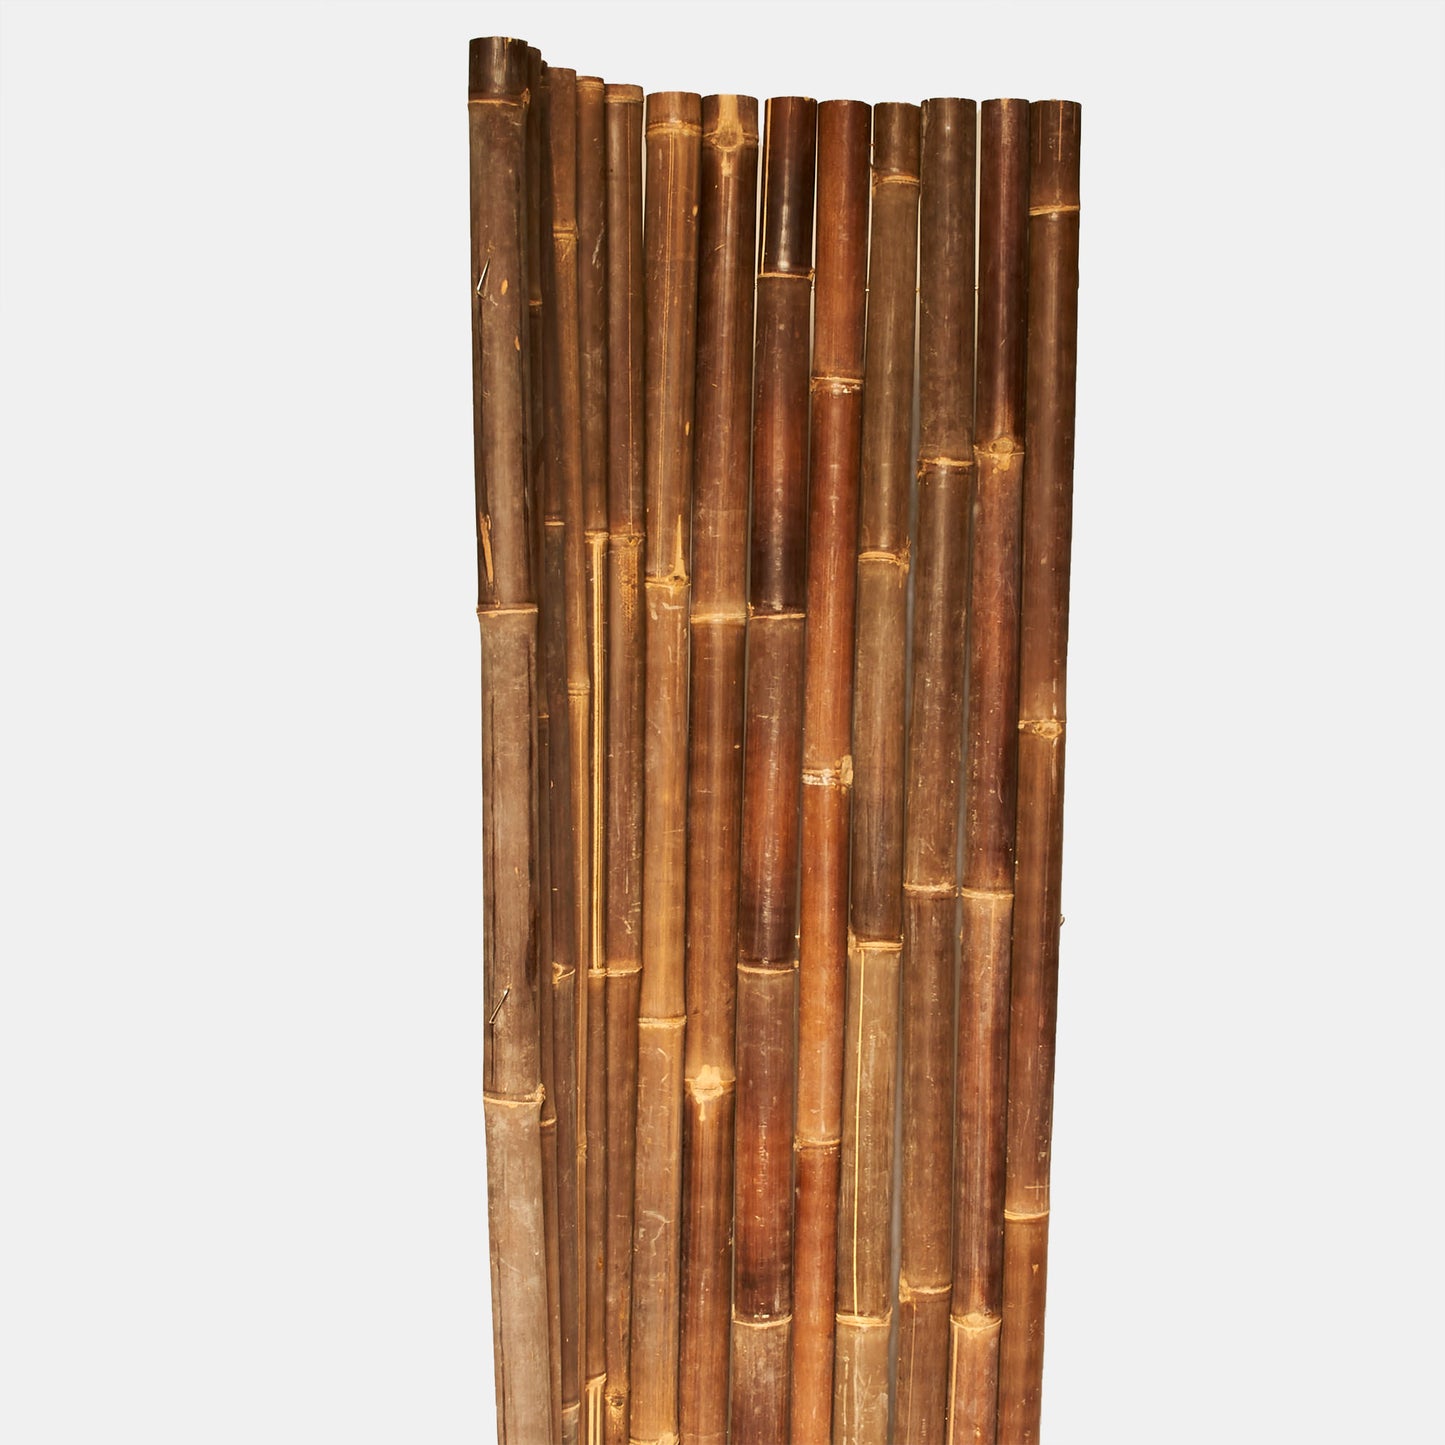 Dunkle Bambus-Rollmatte / Sichtschutz / Wandverkleidung mit Edelstahl oder verzinktem Draht als Verbund - Produktfoto